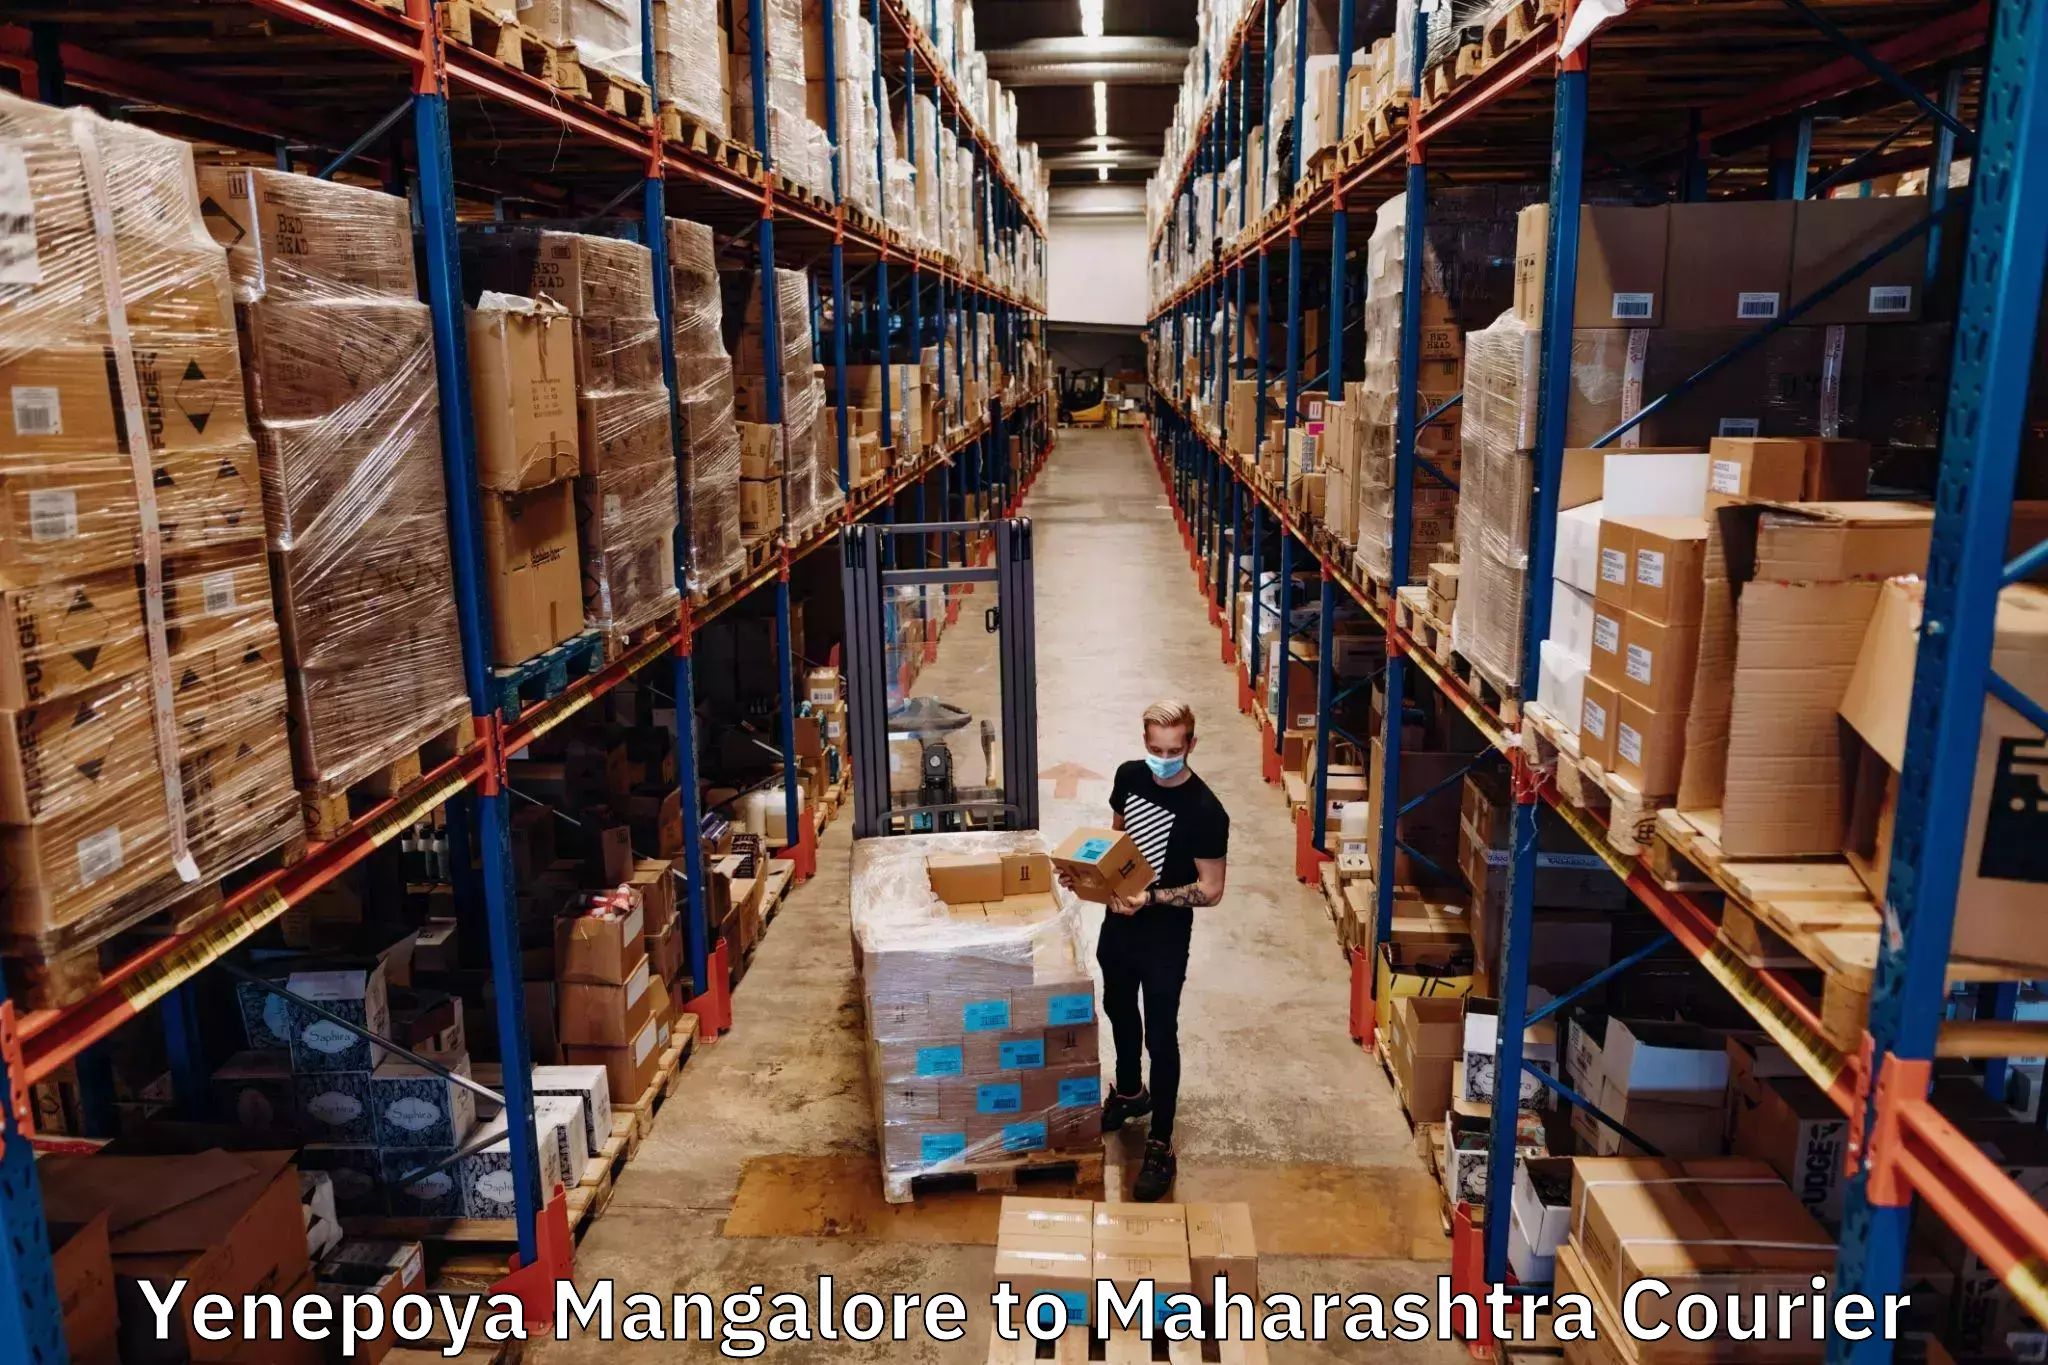 Nationwide parcel services Yenepoya Mangalore to Navi Mumbai